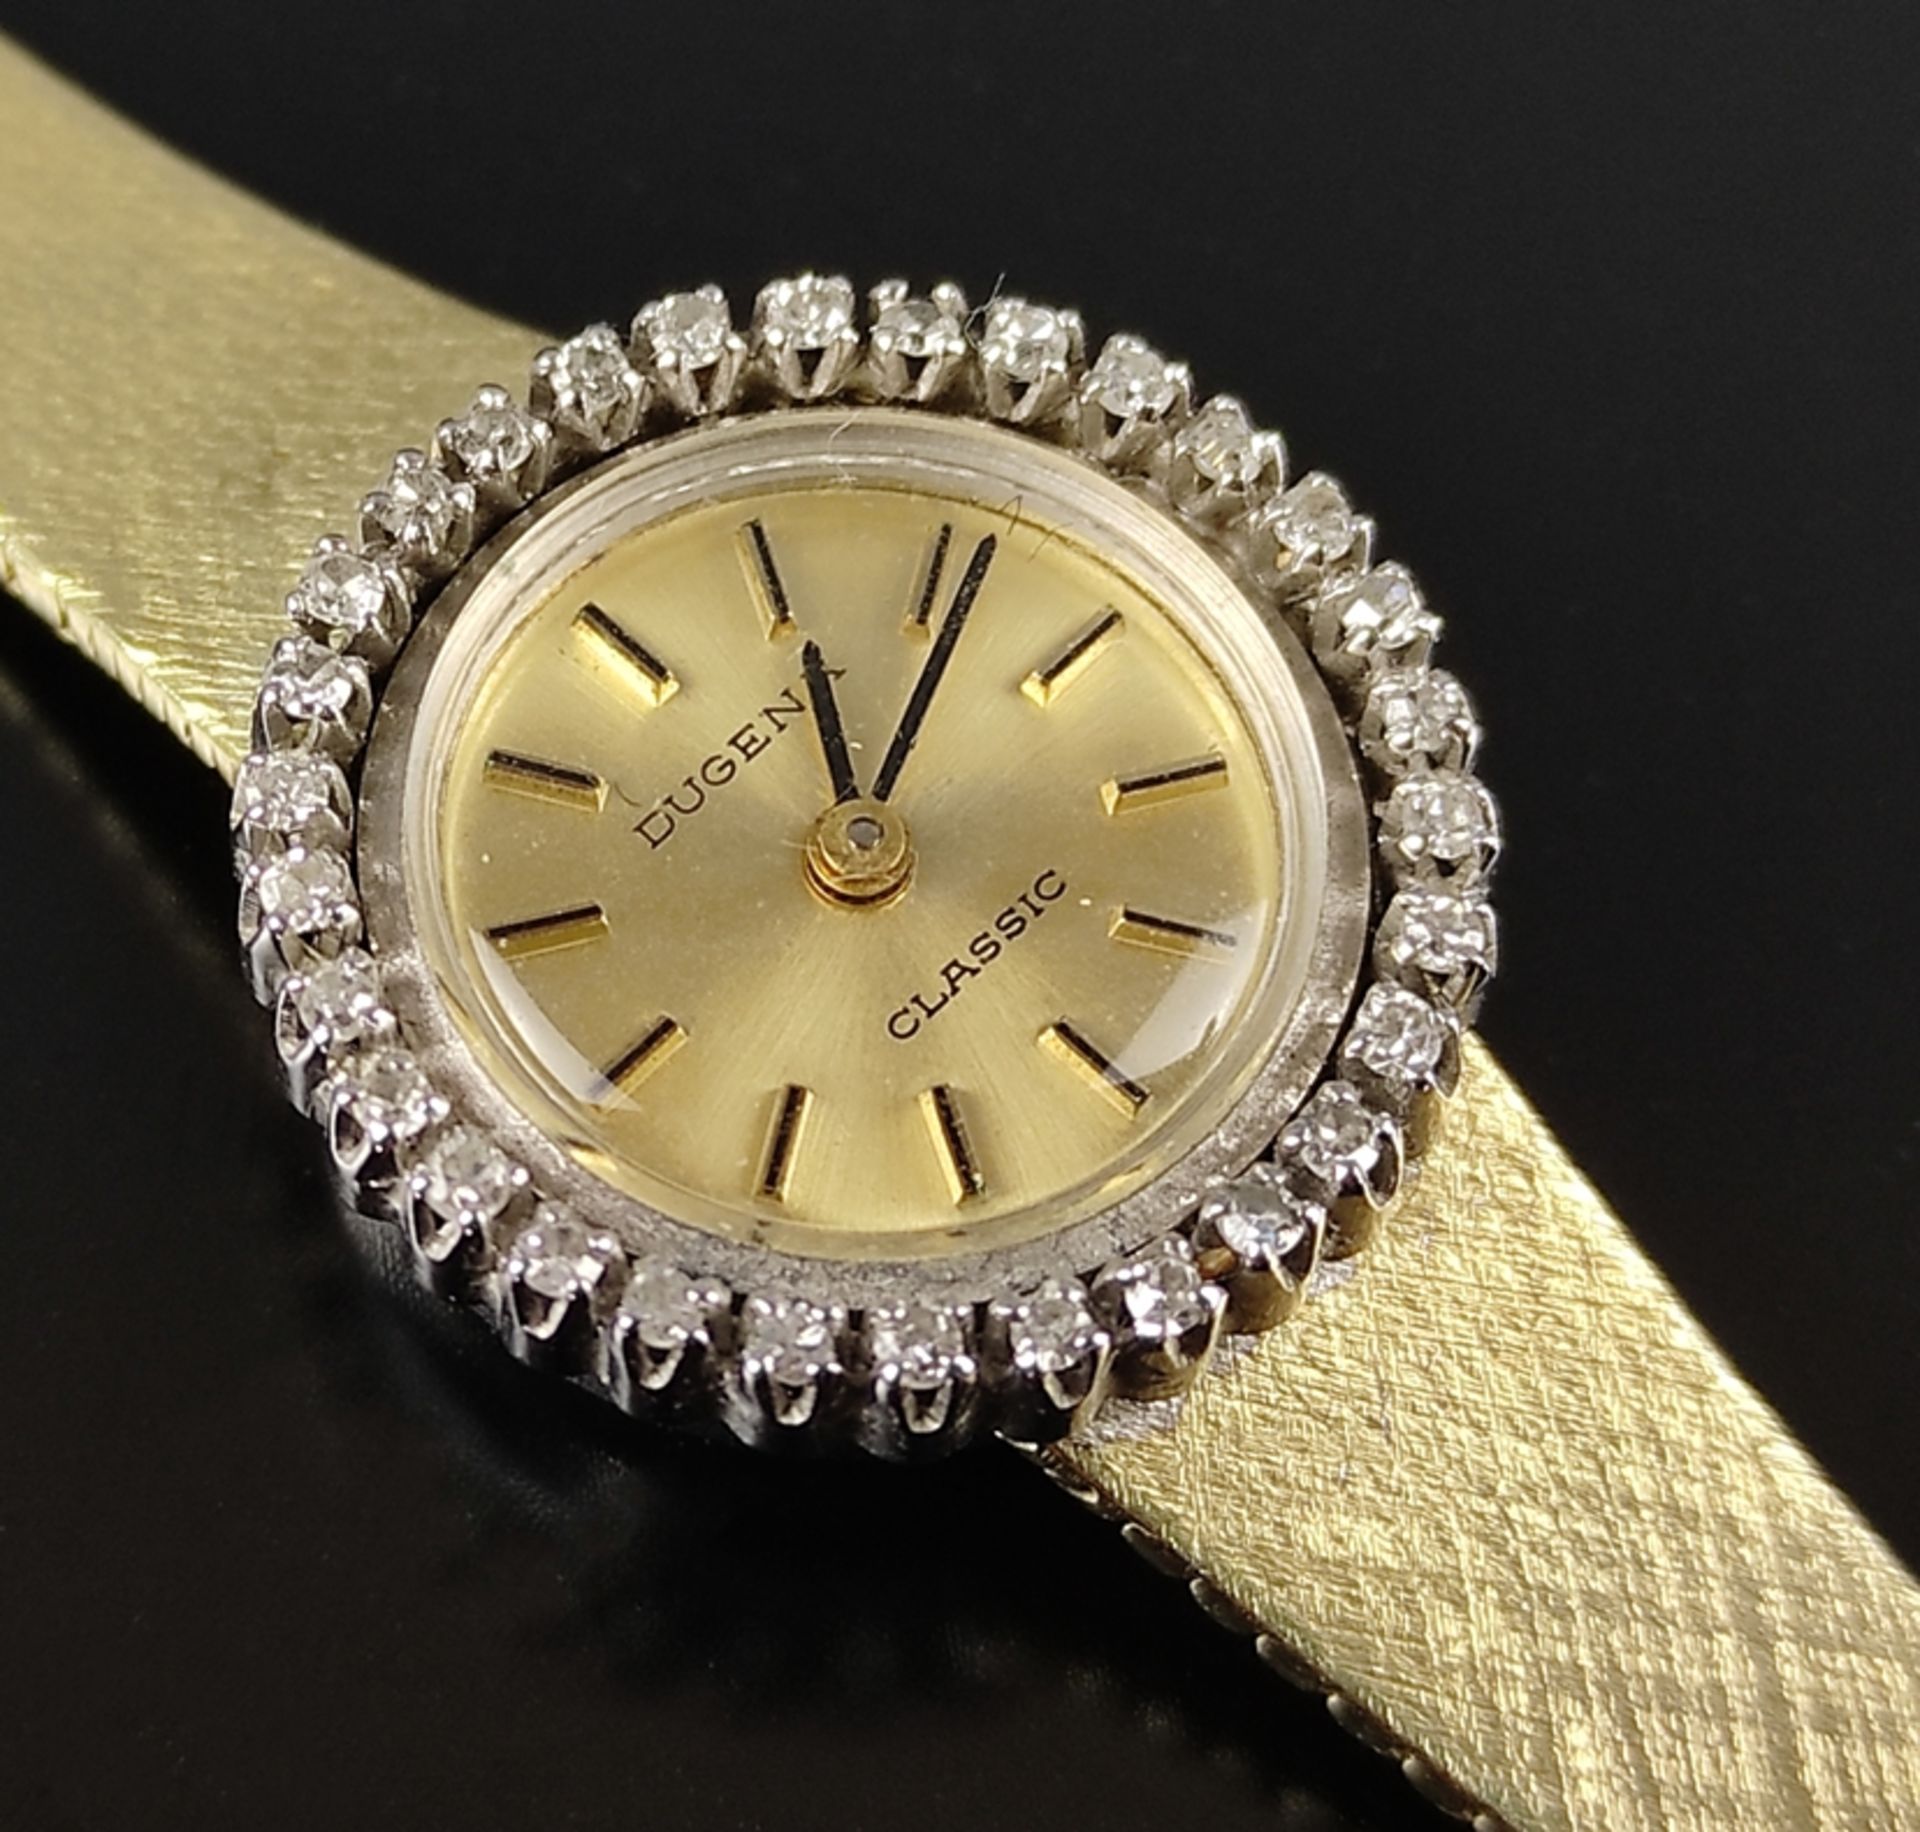 Damenarmbanduhr, Dugena Classic, Uhr gepunzt 585/14K Gelbgold, runde Lunette besetzt mit 30 kleinen - Bild 2 aus 4